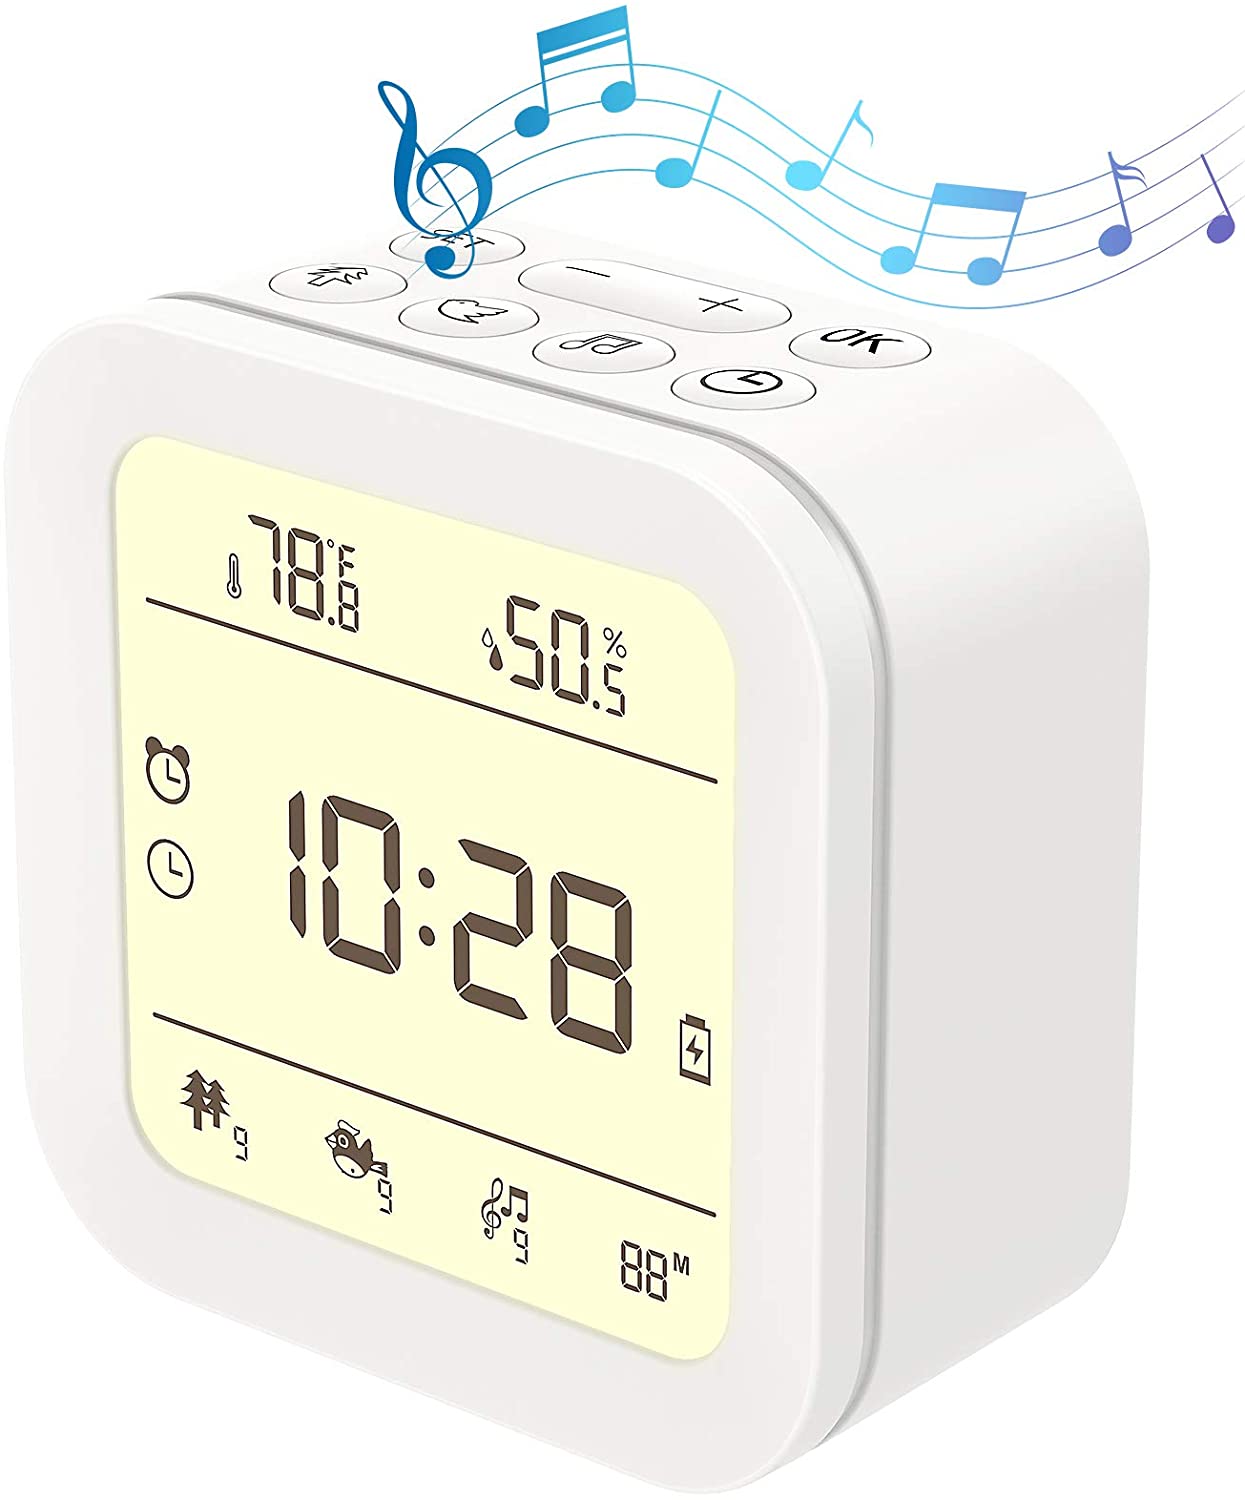 white noise alarm clock website